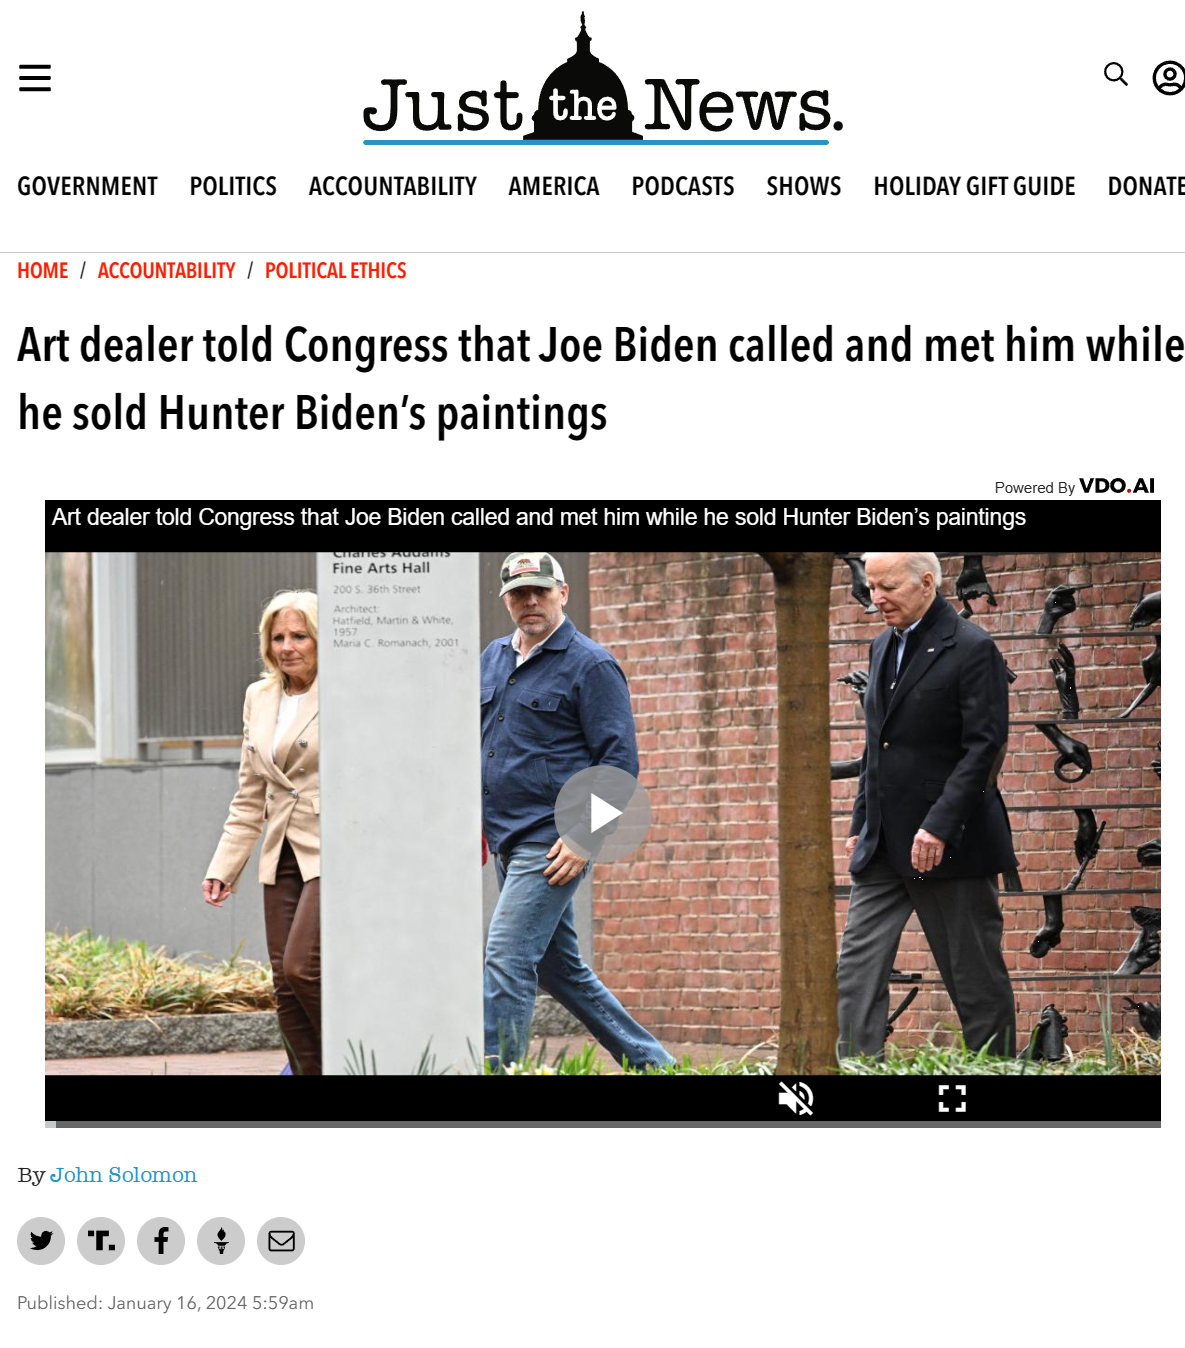 Art dealer told Congress that Joe Biden called and met him while he sold Hunter Biden’s paintings